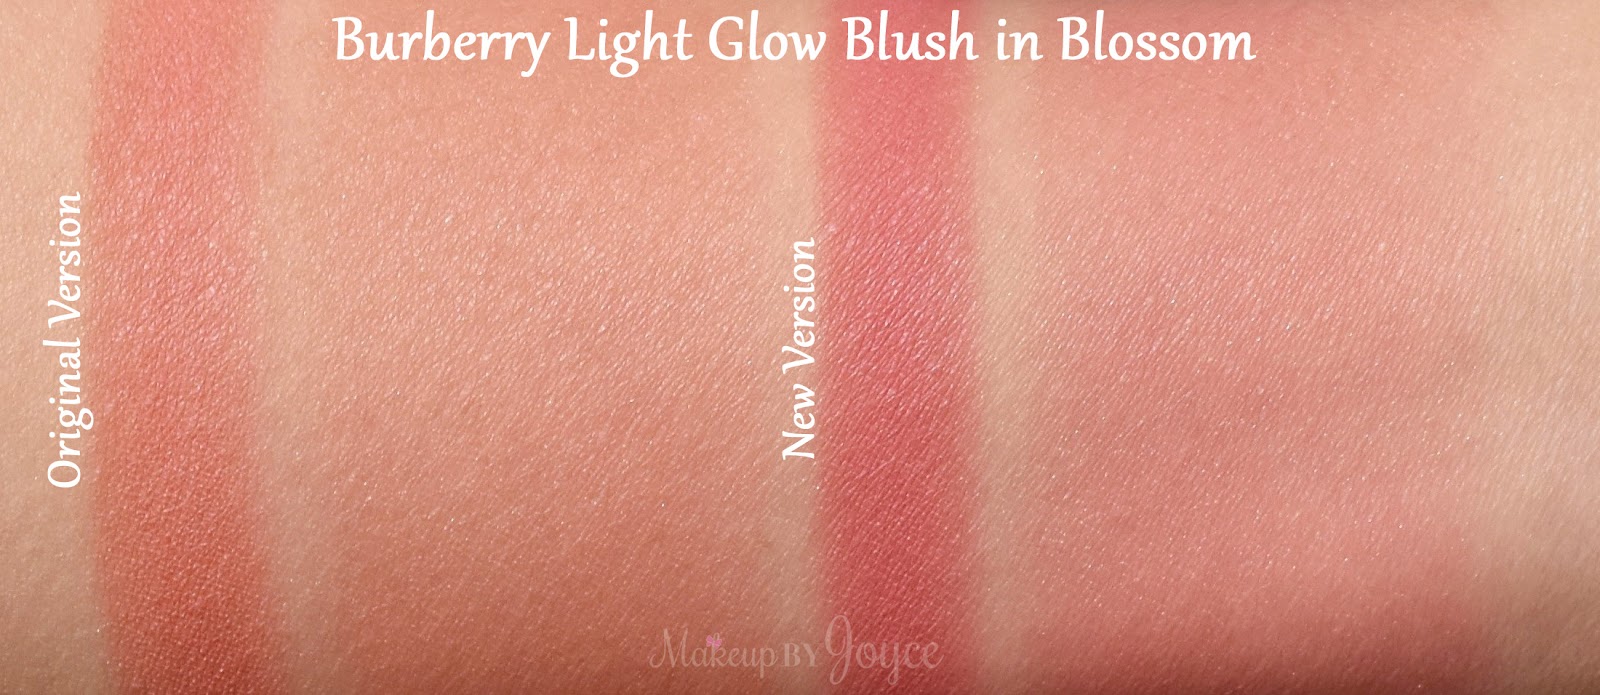 burberry light glow blush review - delexpresscourier.com 